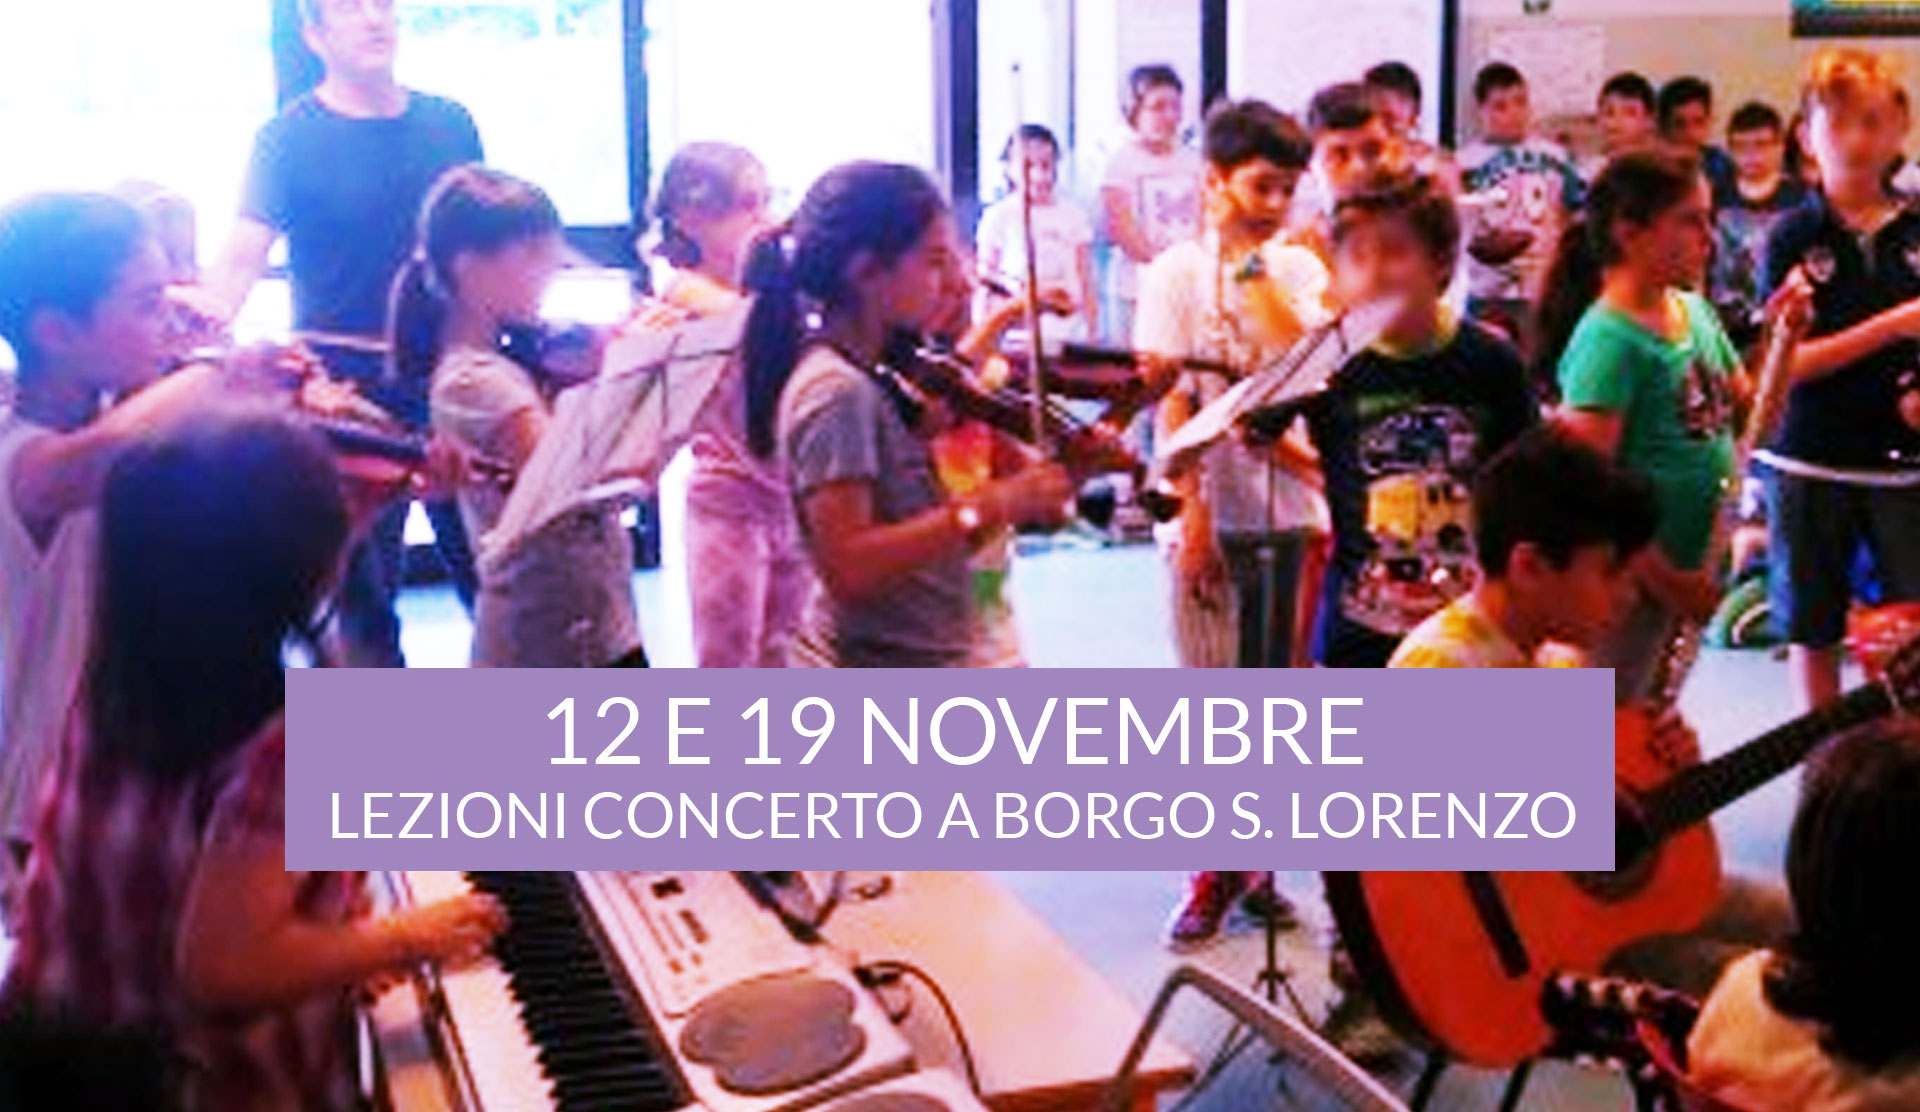 Lezioni concerto nella scuola elementare di Borgo S. lorenzo 12 e 19 Novembre